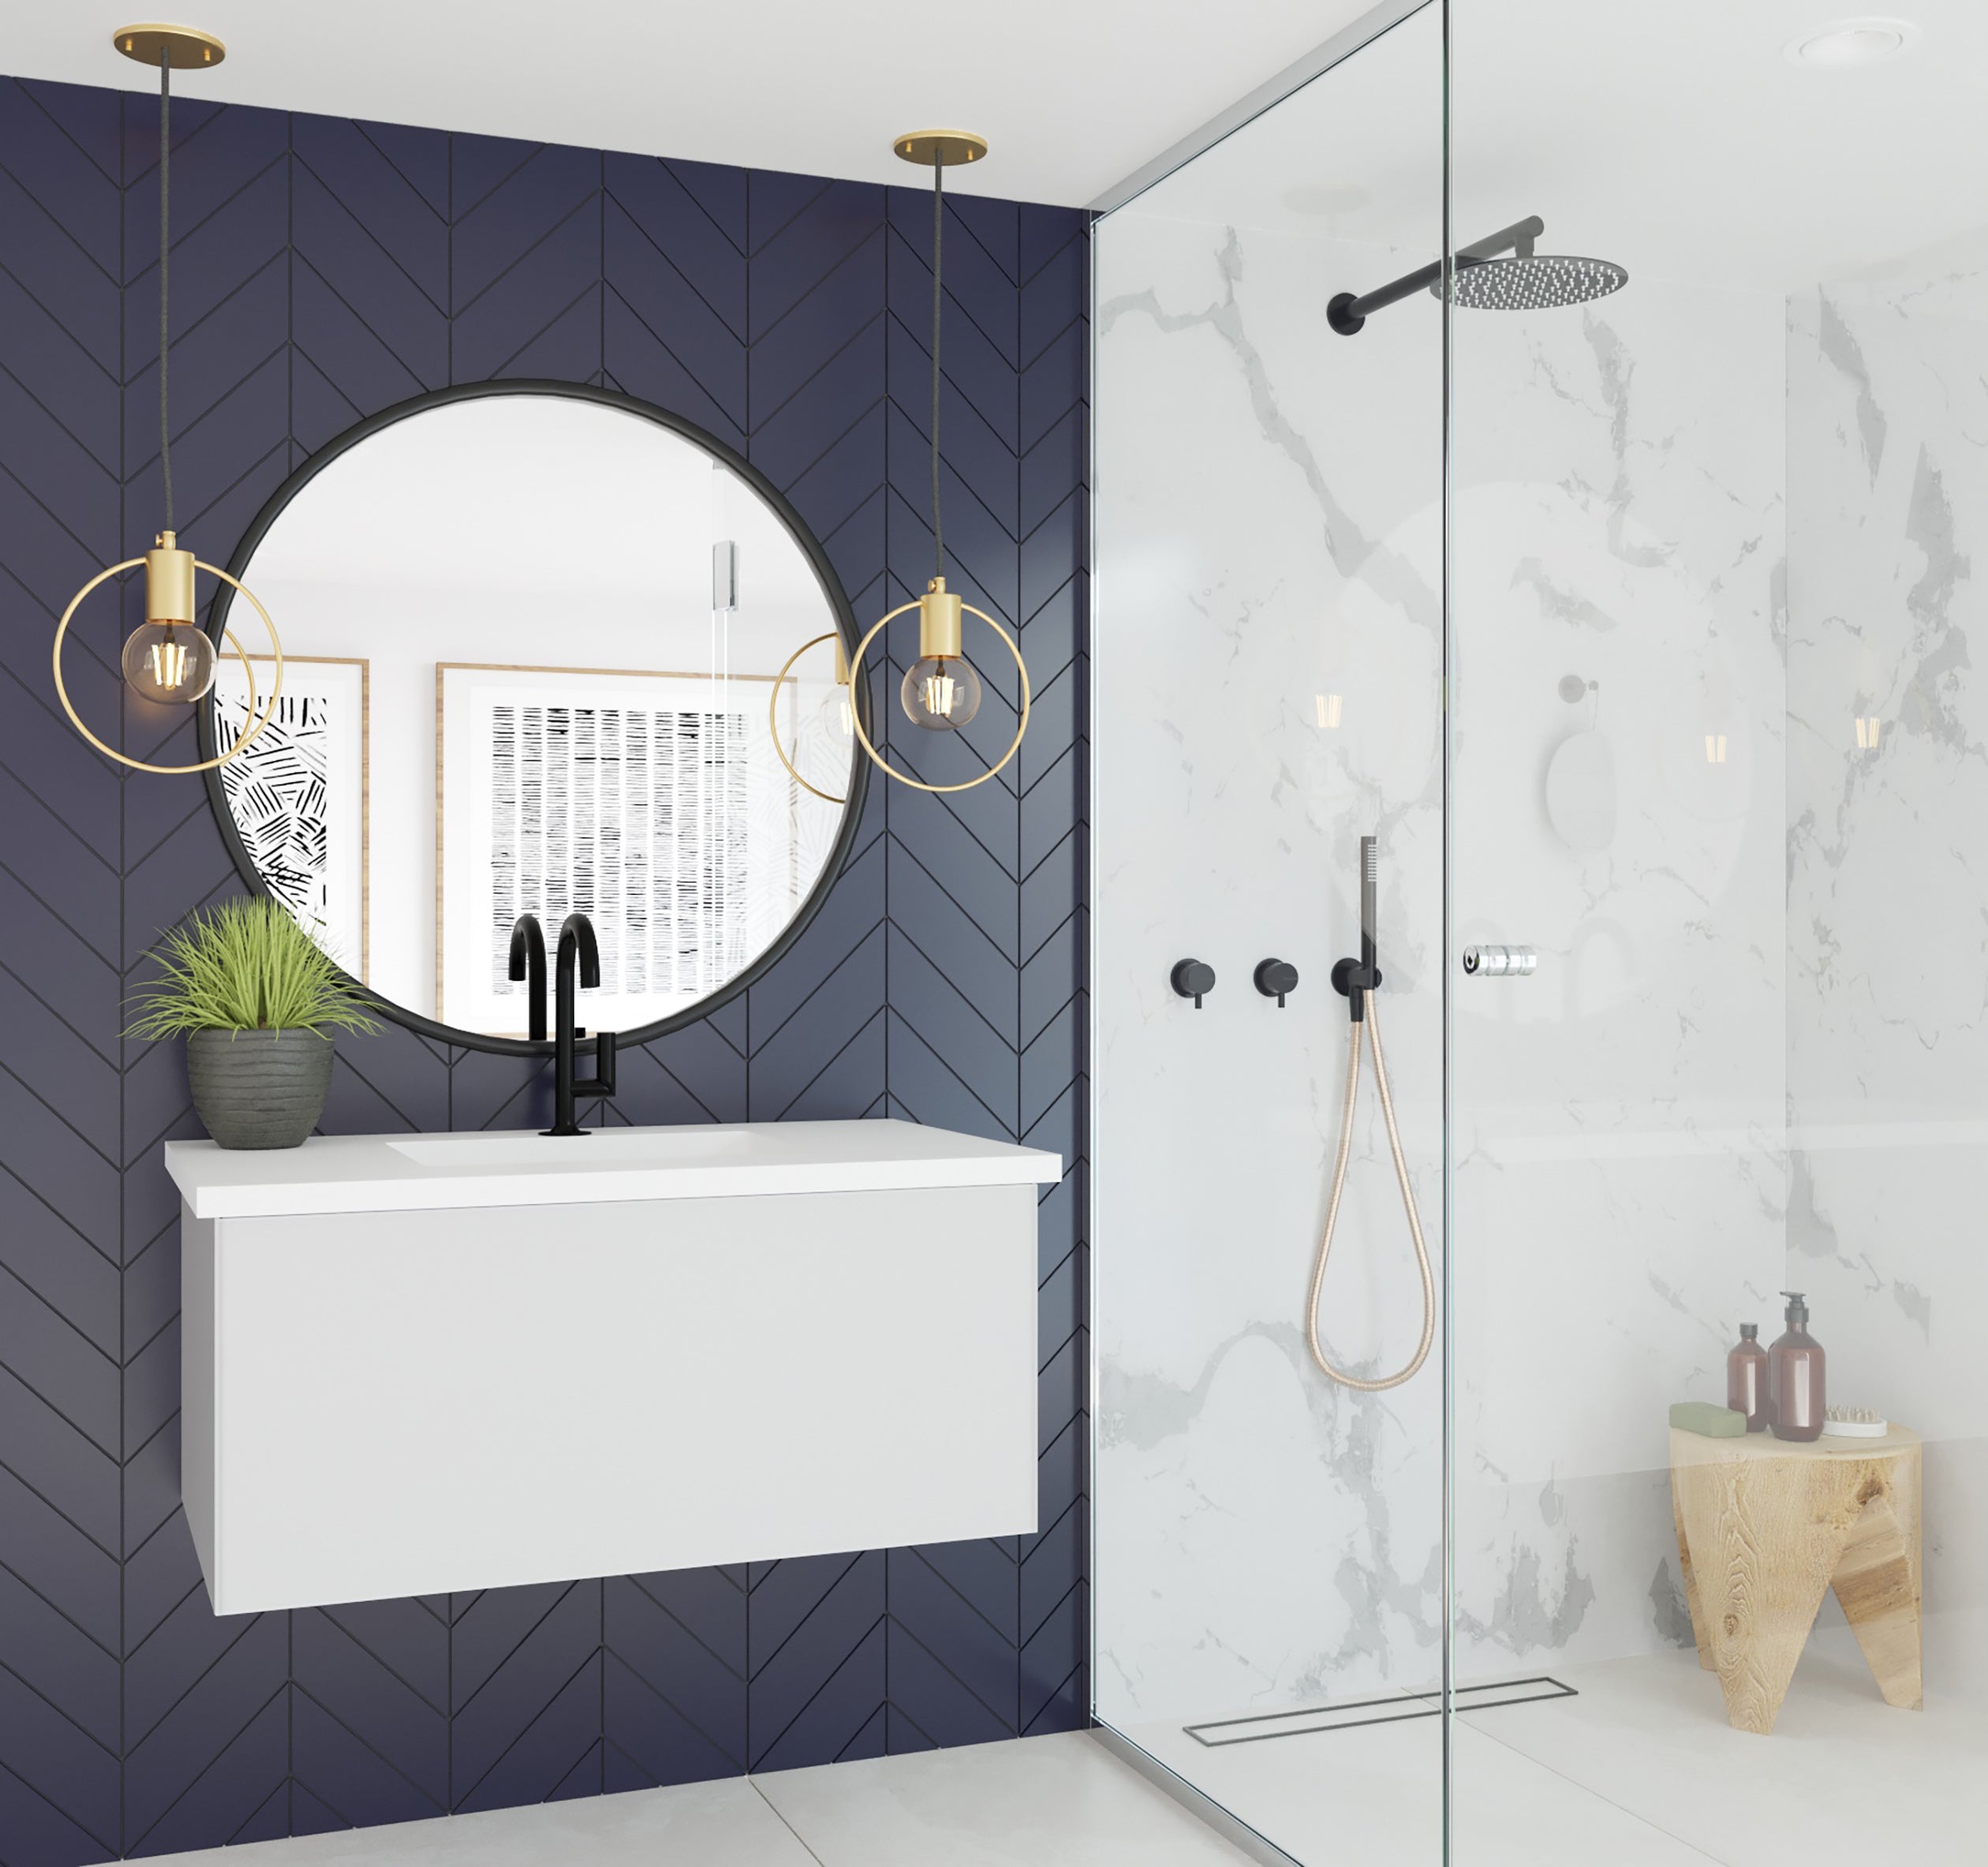 Laviva Vitri 36" Bathroom Vanity Set w/ Sink in White | 313VTR-36CW